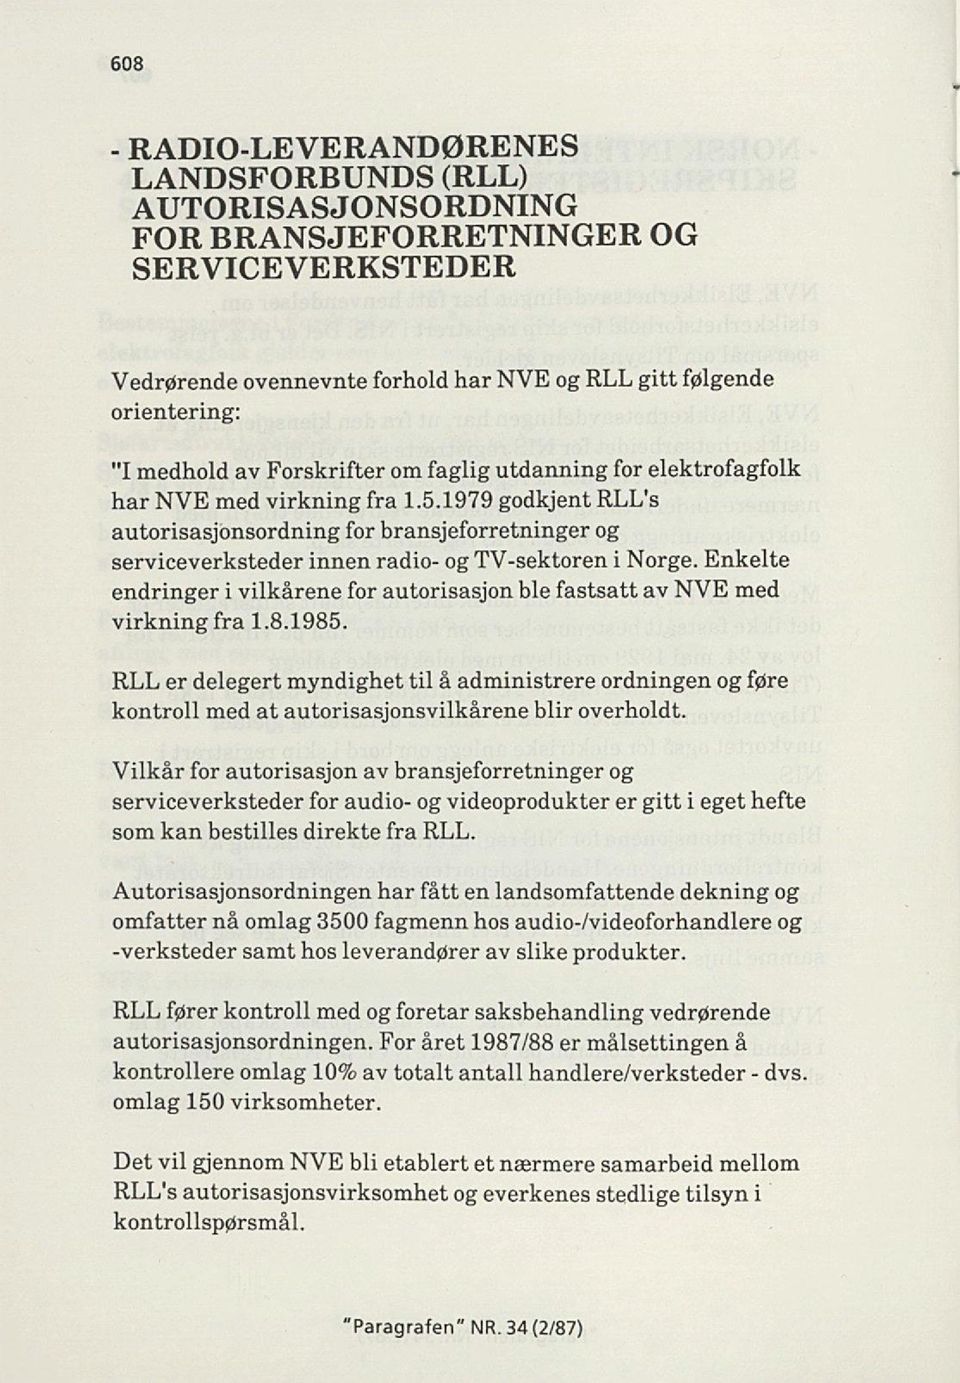 1979 godkjent RLL's autorisasjonsordning for bransjeforretninger og serviceverksteder innen radio- og TV-sektoren i Norge.